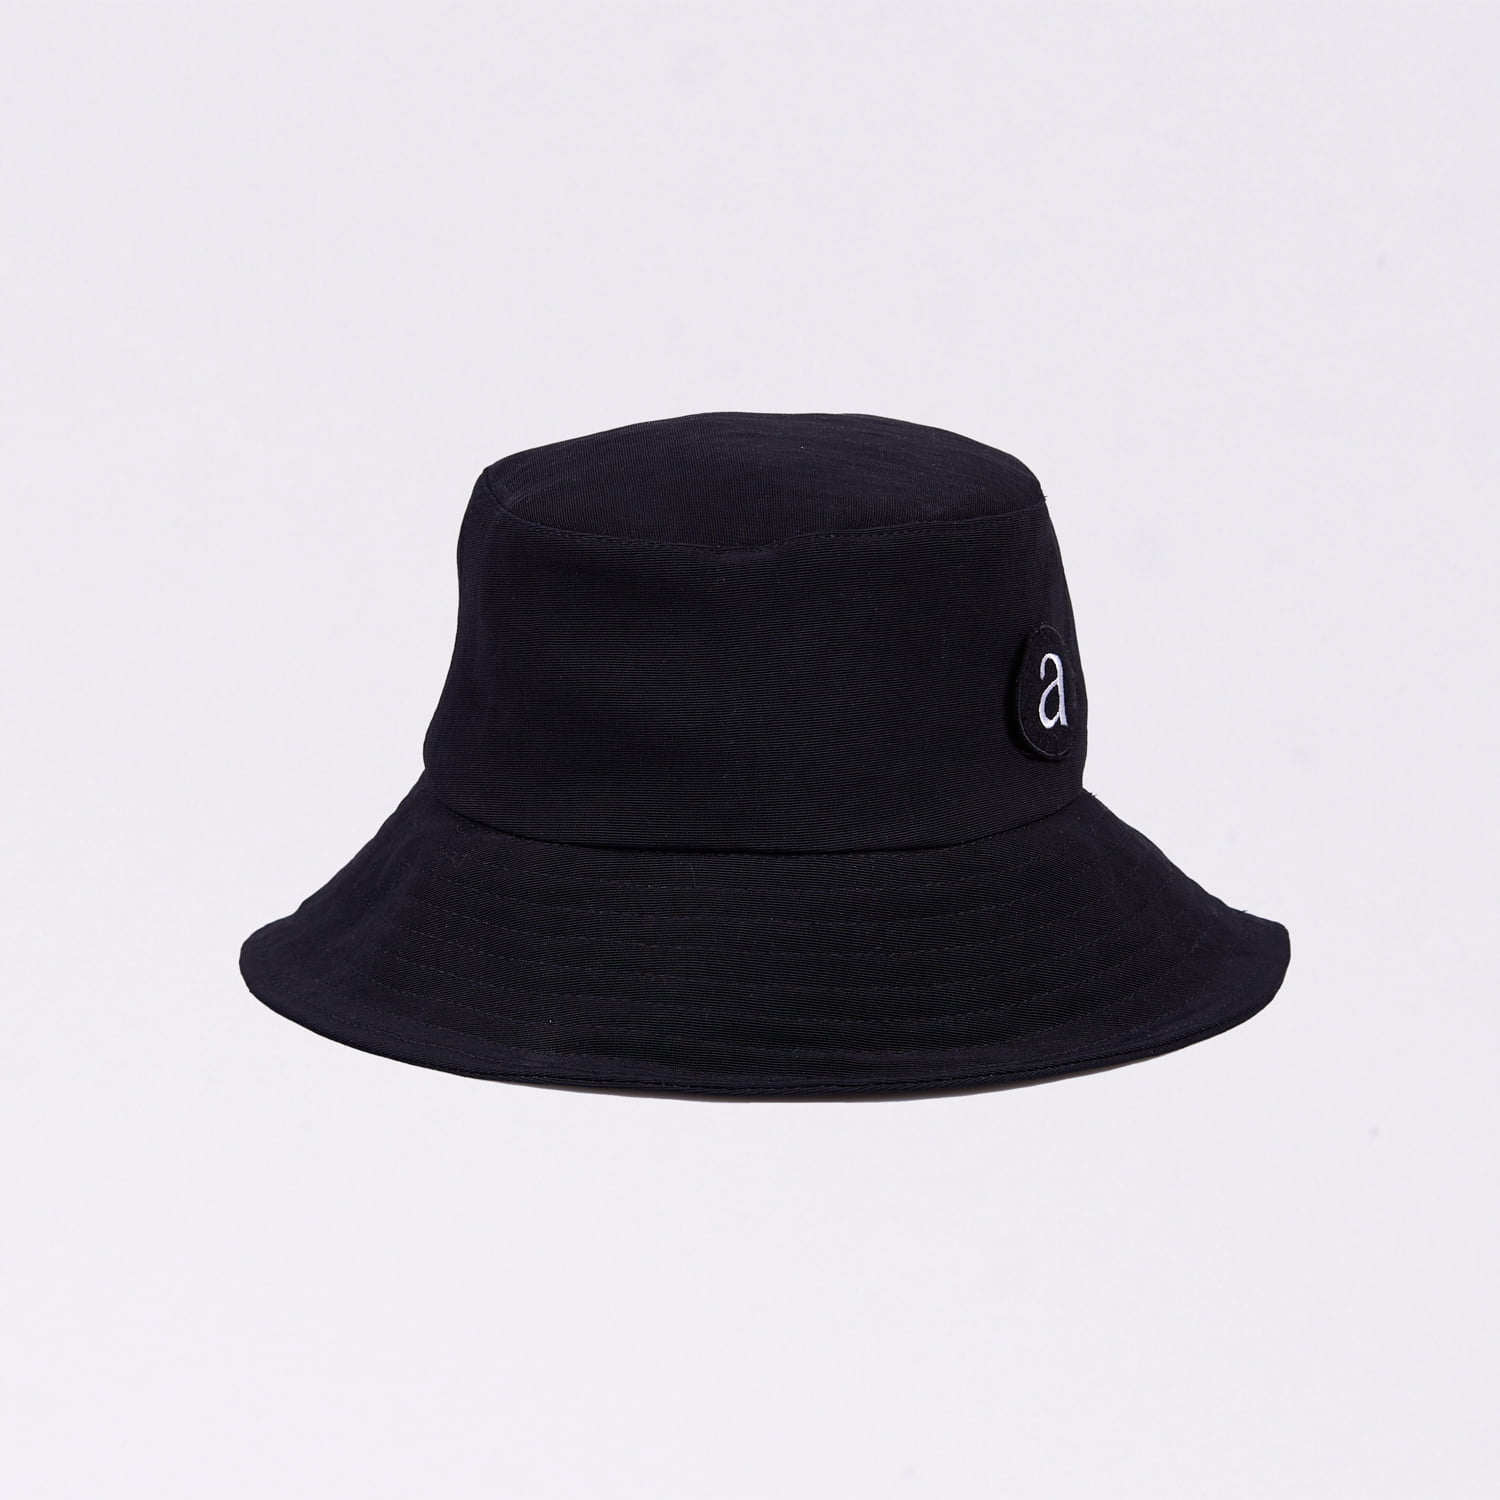 Acephala Fw20 Black Abaka Hat Warm